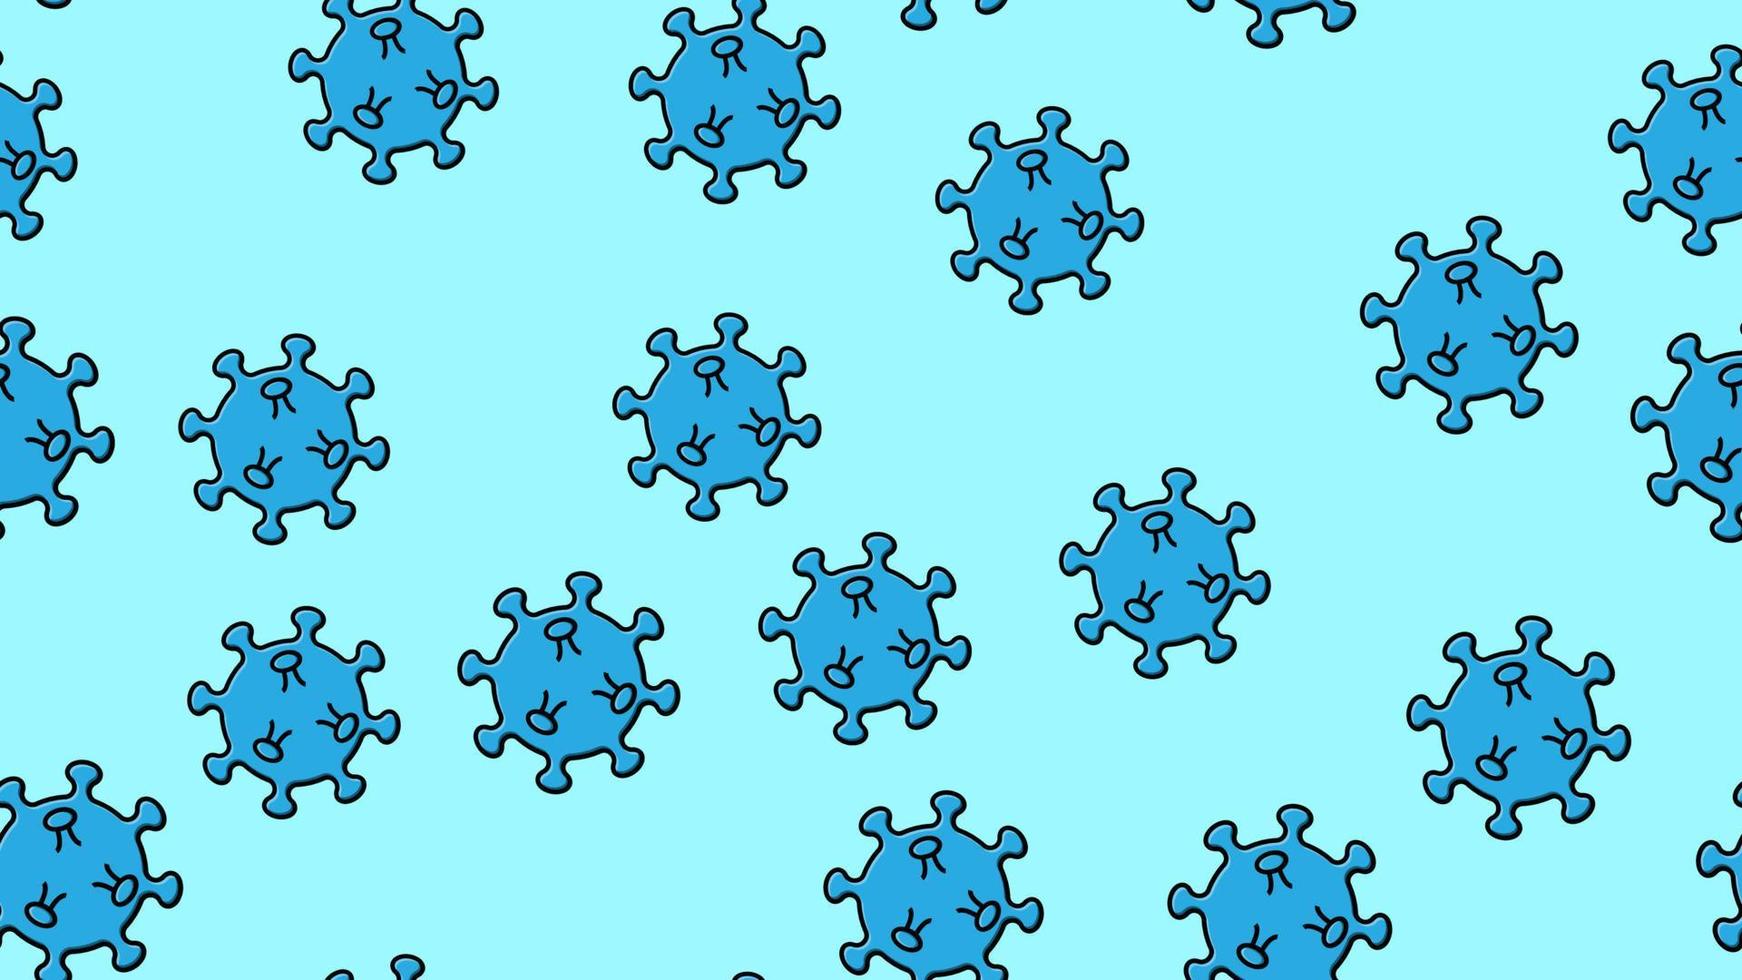 interminável padrão contínuo de epidemia de pandemia de coronavírus respiratório mortal infeccioso azul, vírus micróbio covid-19 causando pneumonia em um fundo azul vetor